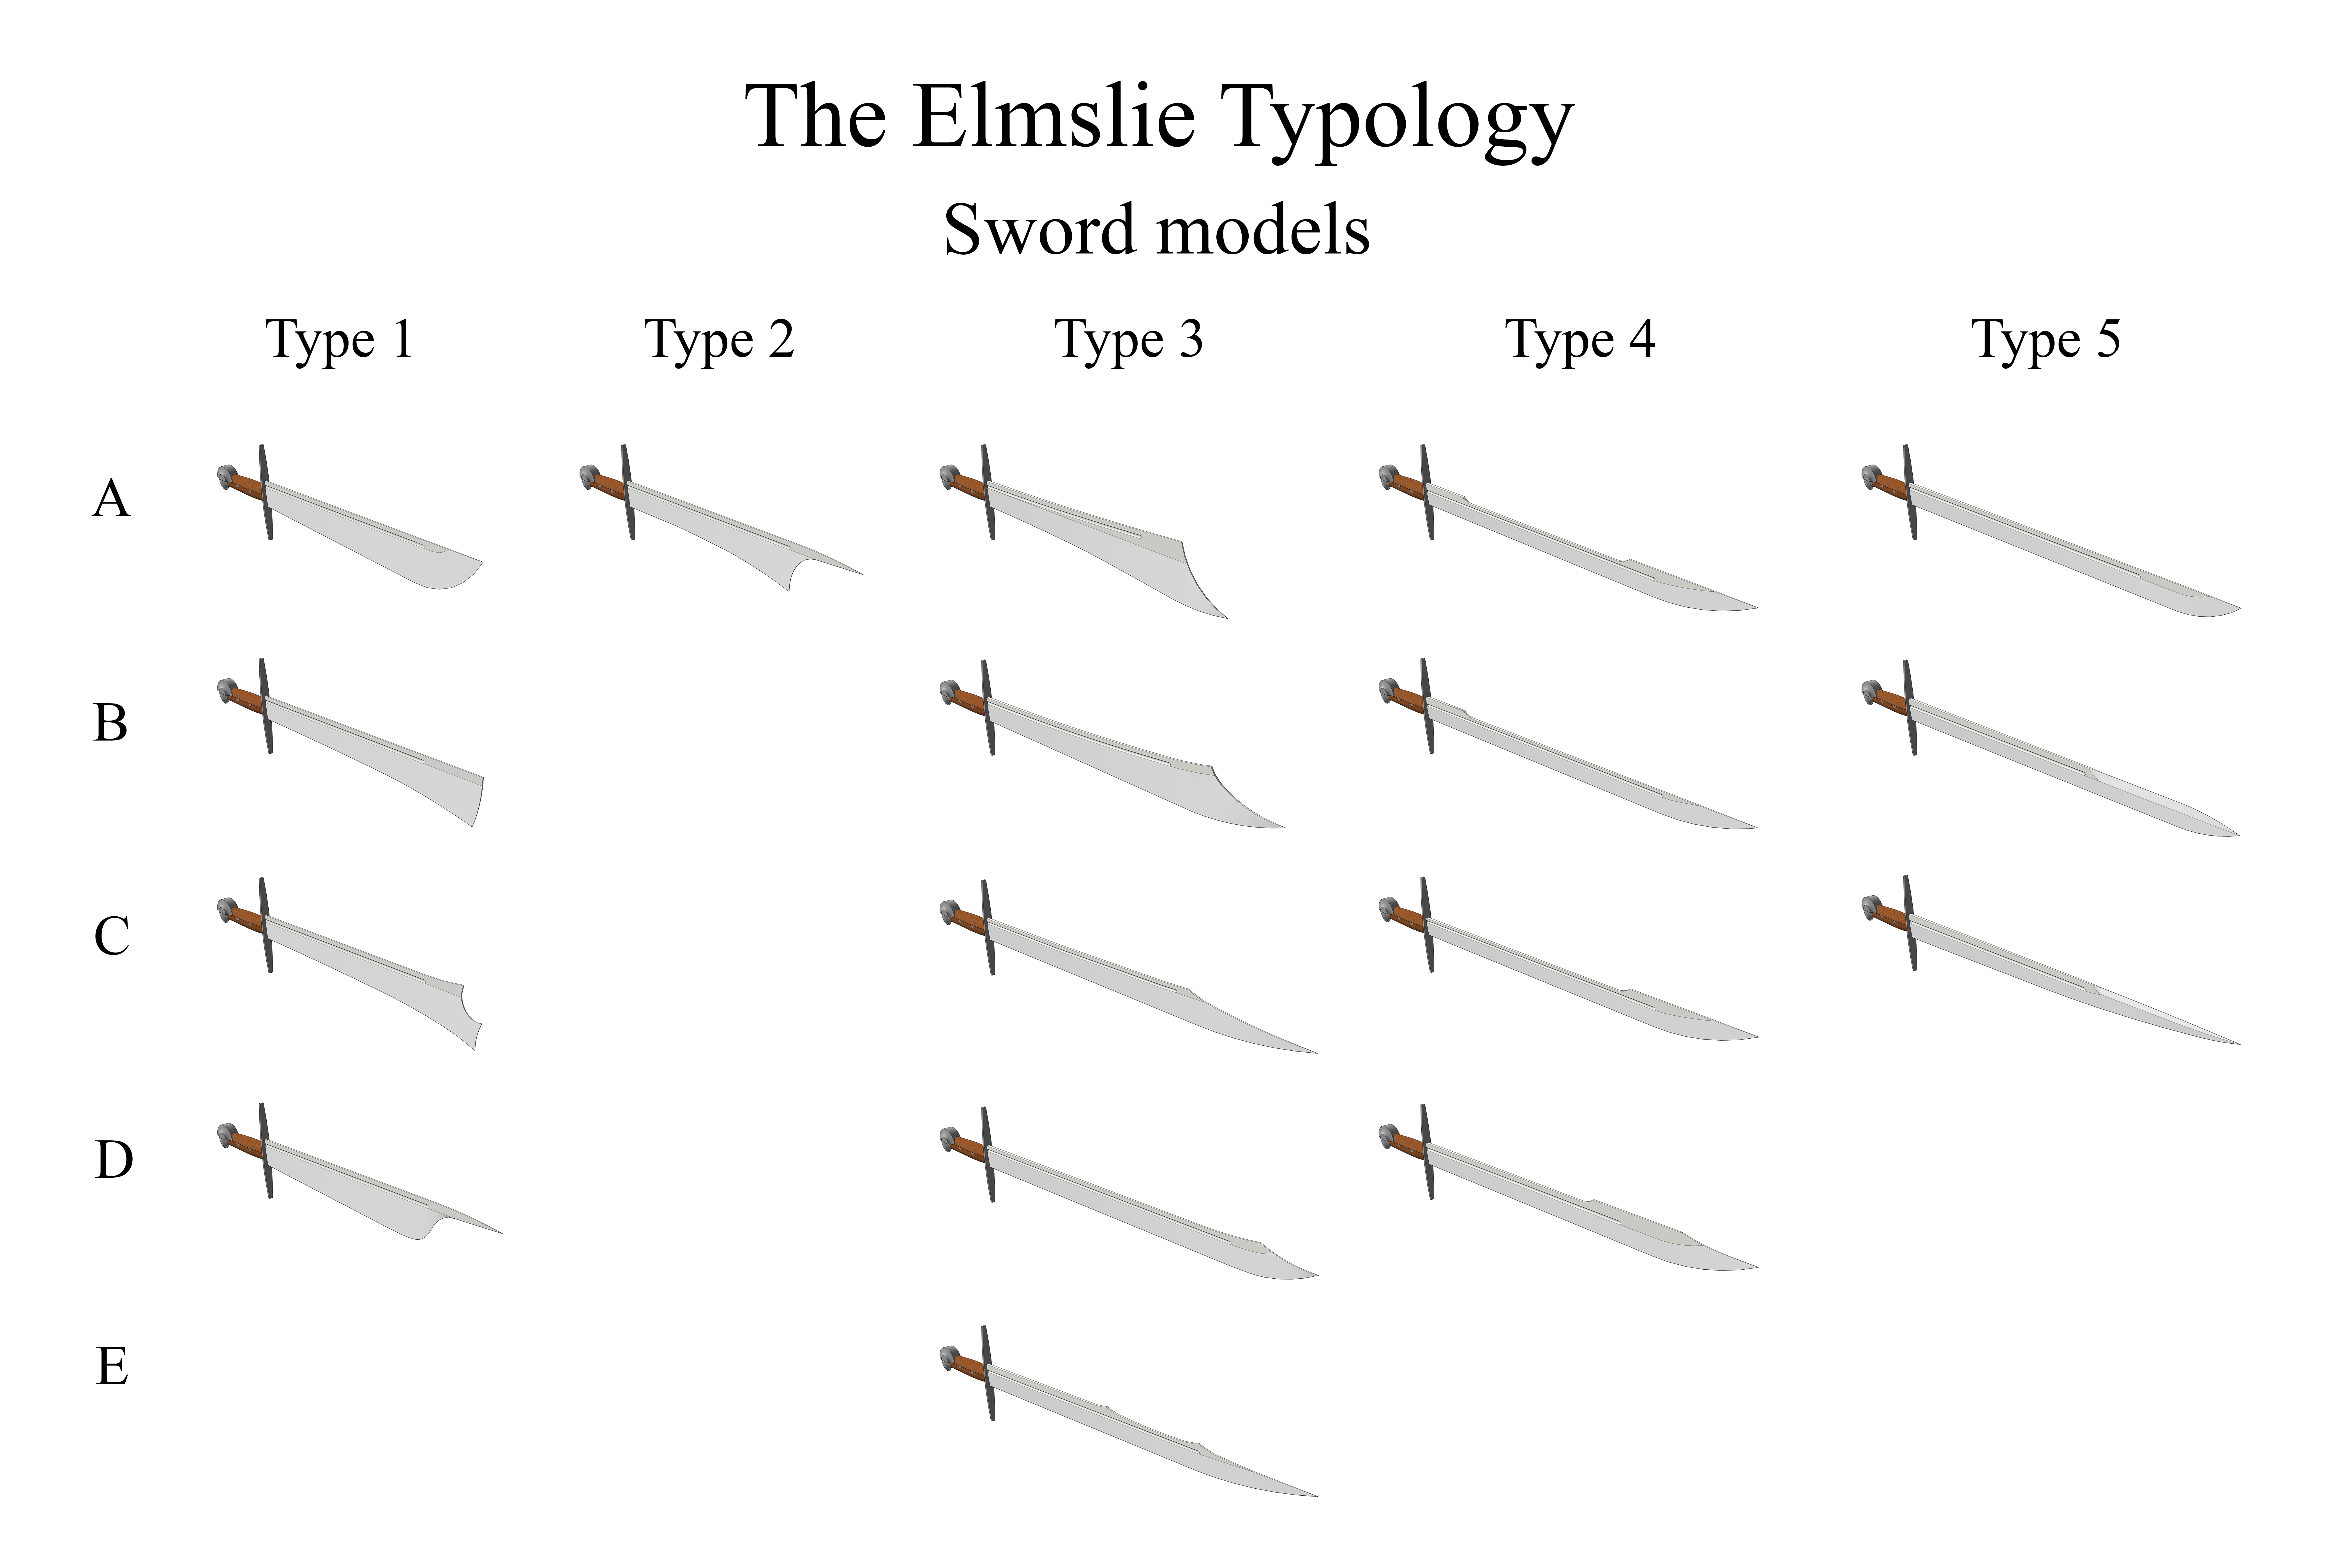 Elmslie typology sword models